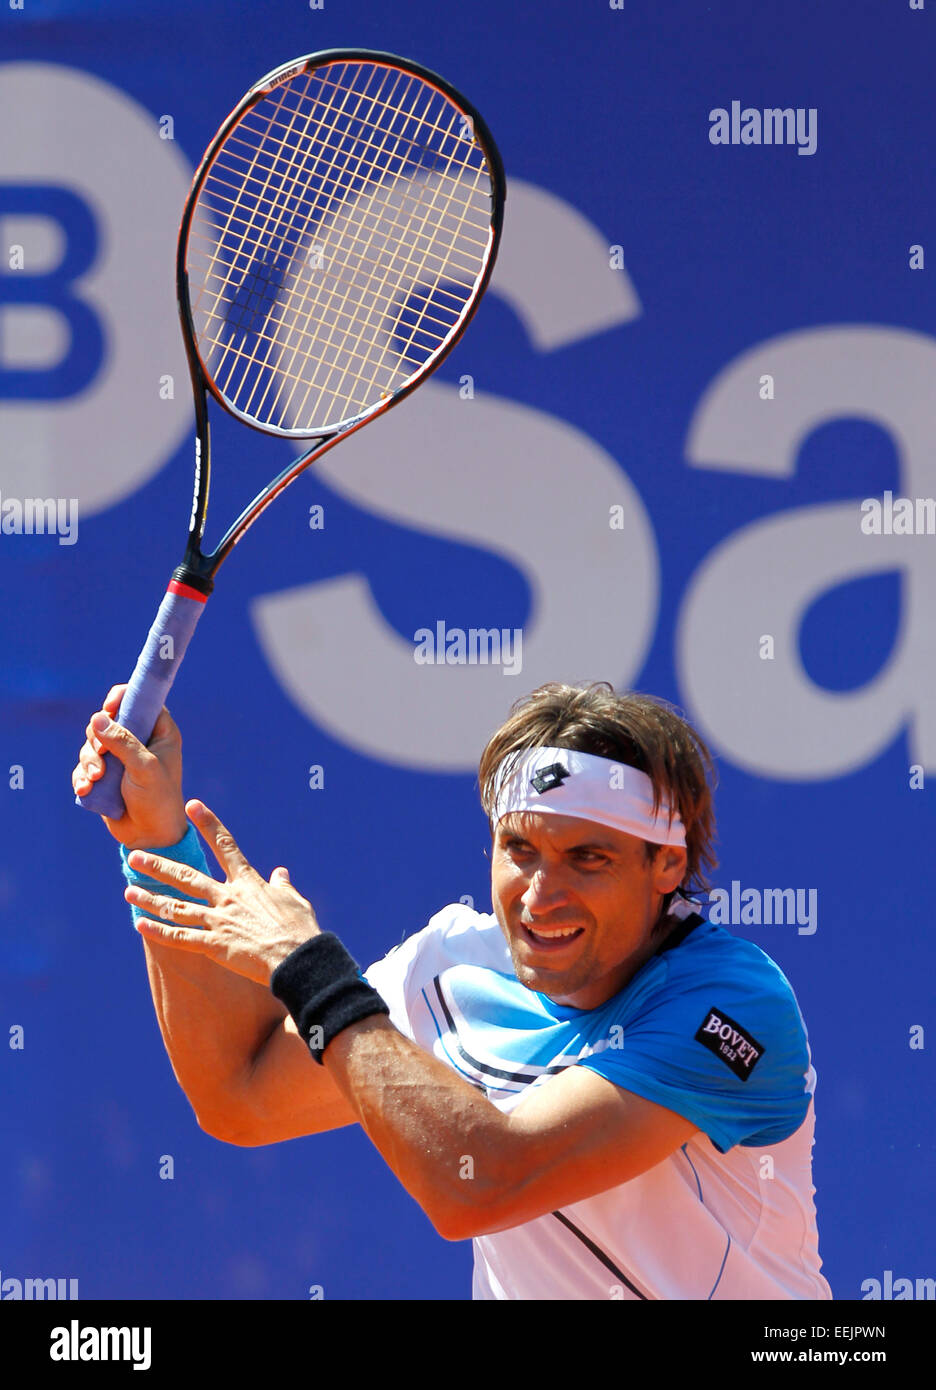 Spanischer Tennisspieler David Ferrer spielen bei der Banc Sabadell ATP in  Barcelona, Spanien zu öffnen Stockfotografie - Alamy